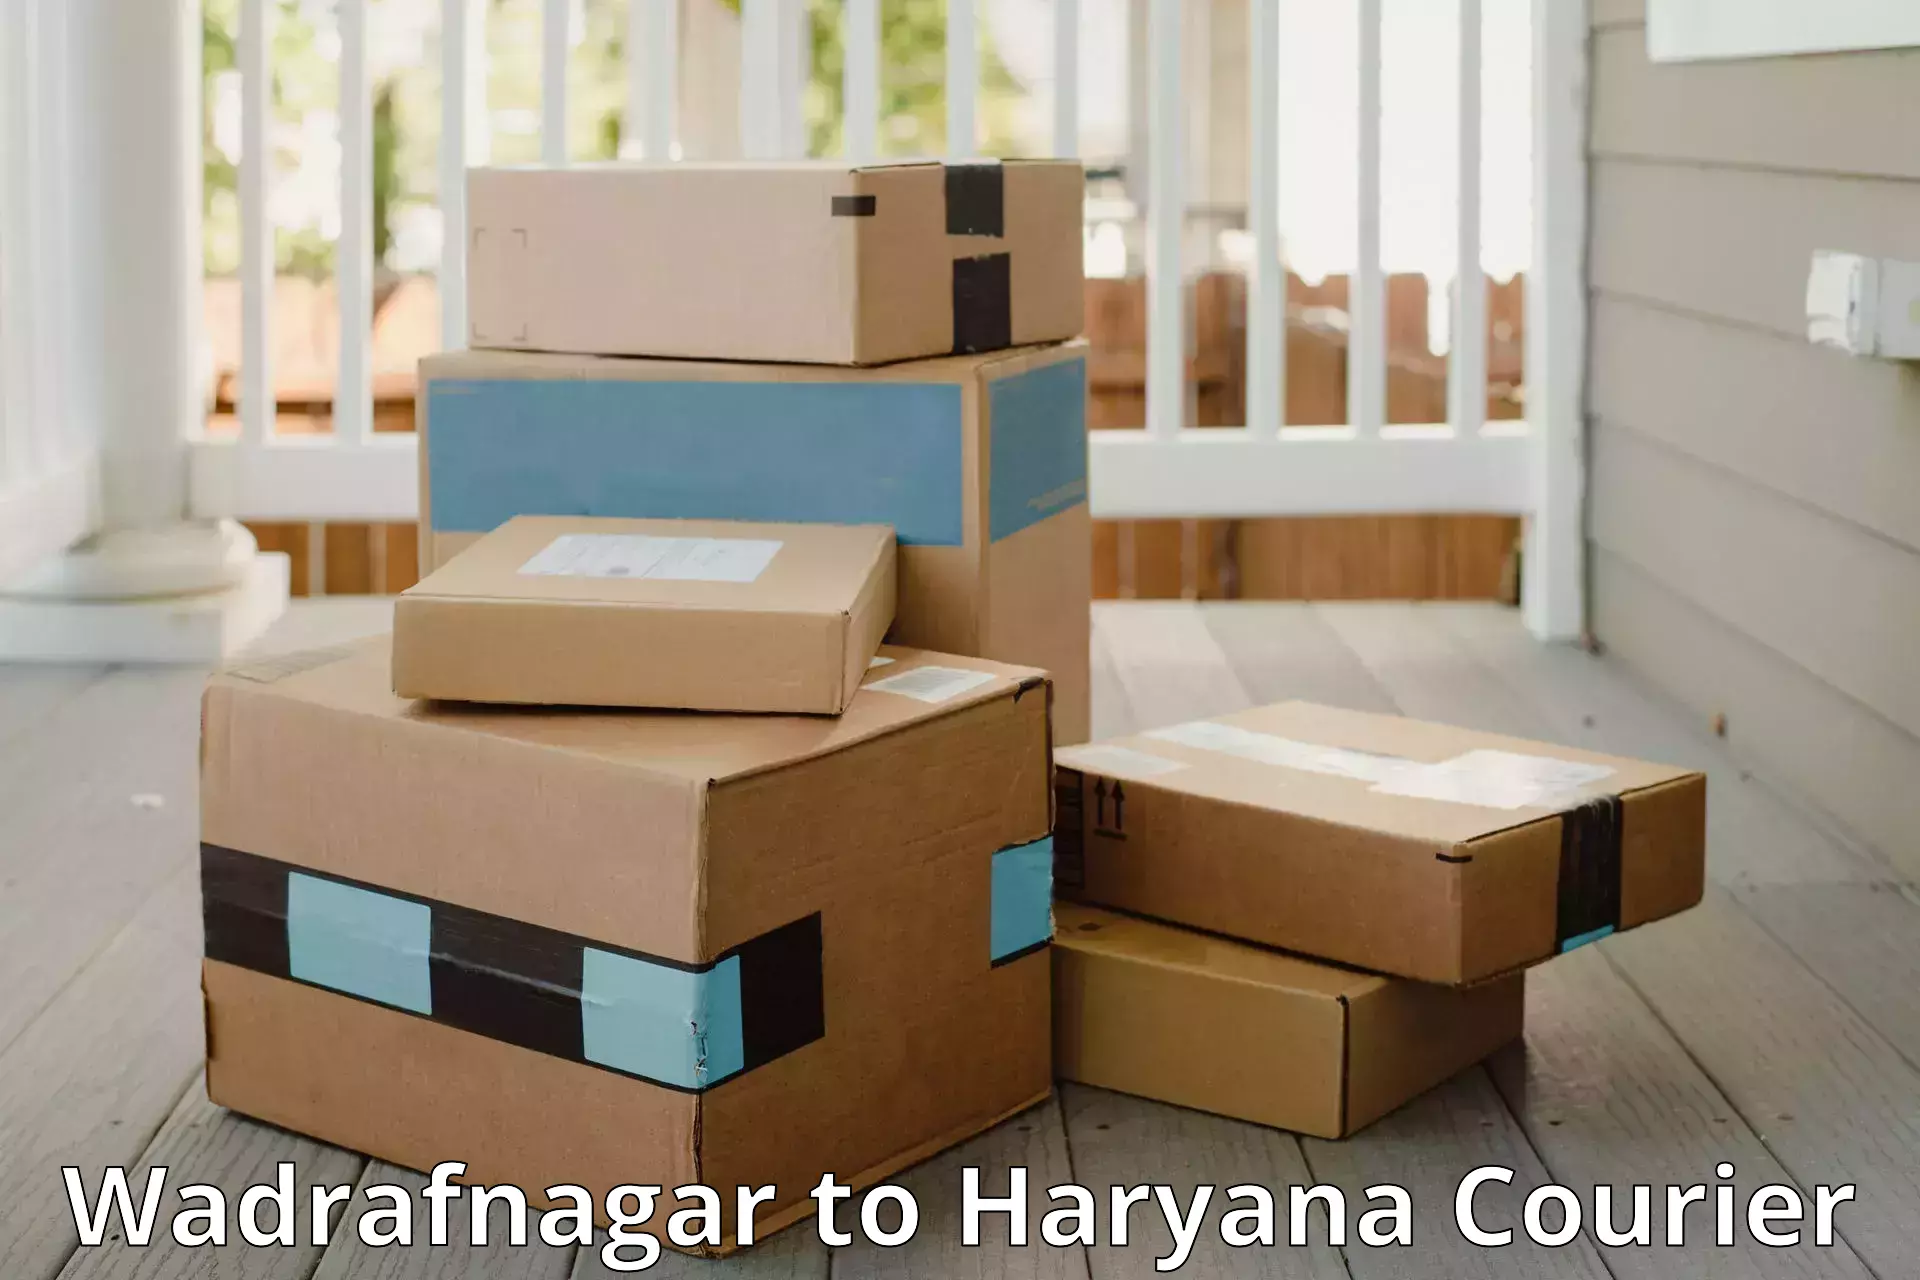 Luggage transport company Wadrafnagar to Barwala